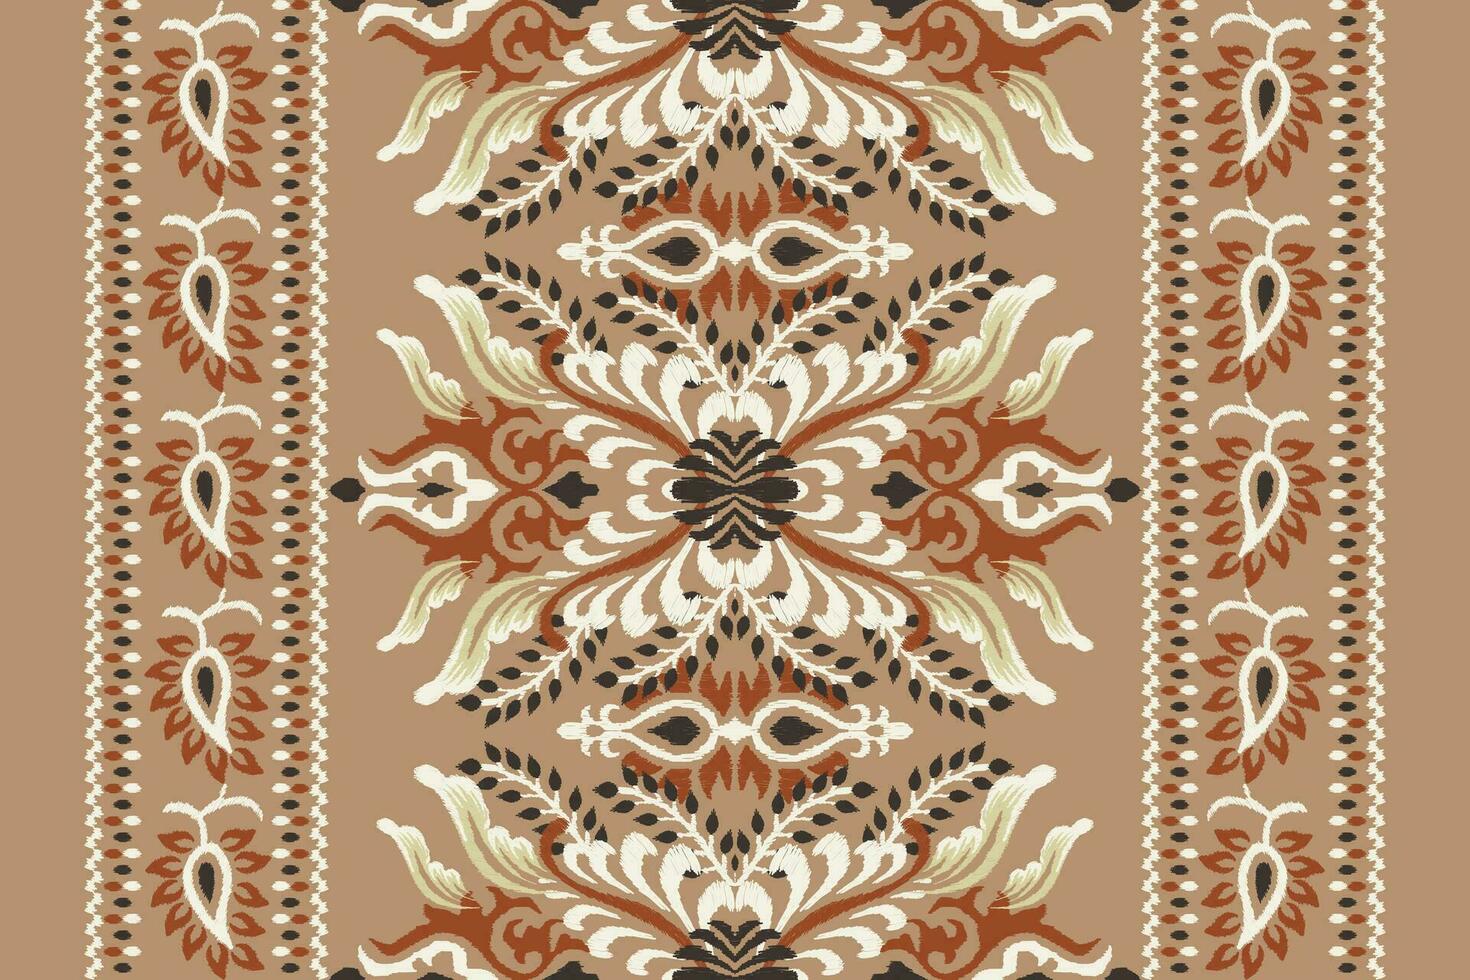 ikat blommig paisley broderi på brun bakgrund.ikat etnisk orientalisk mönster traditionell.aztec stil abstrakt vektor illustration.design för textur, tyg, kläder, inslagning, dekoration, halsduk, matta